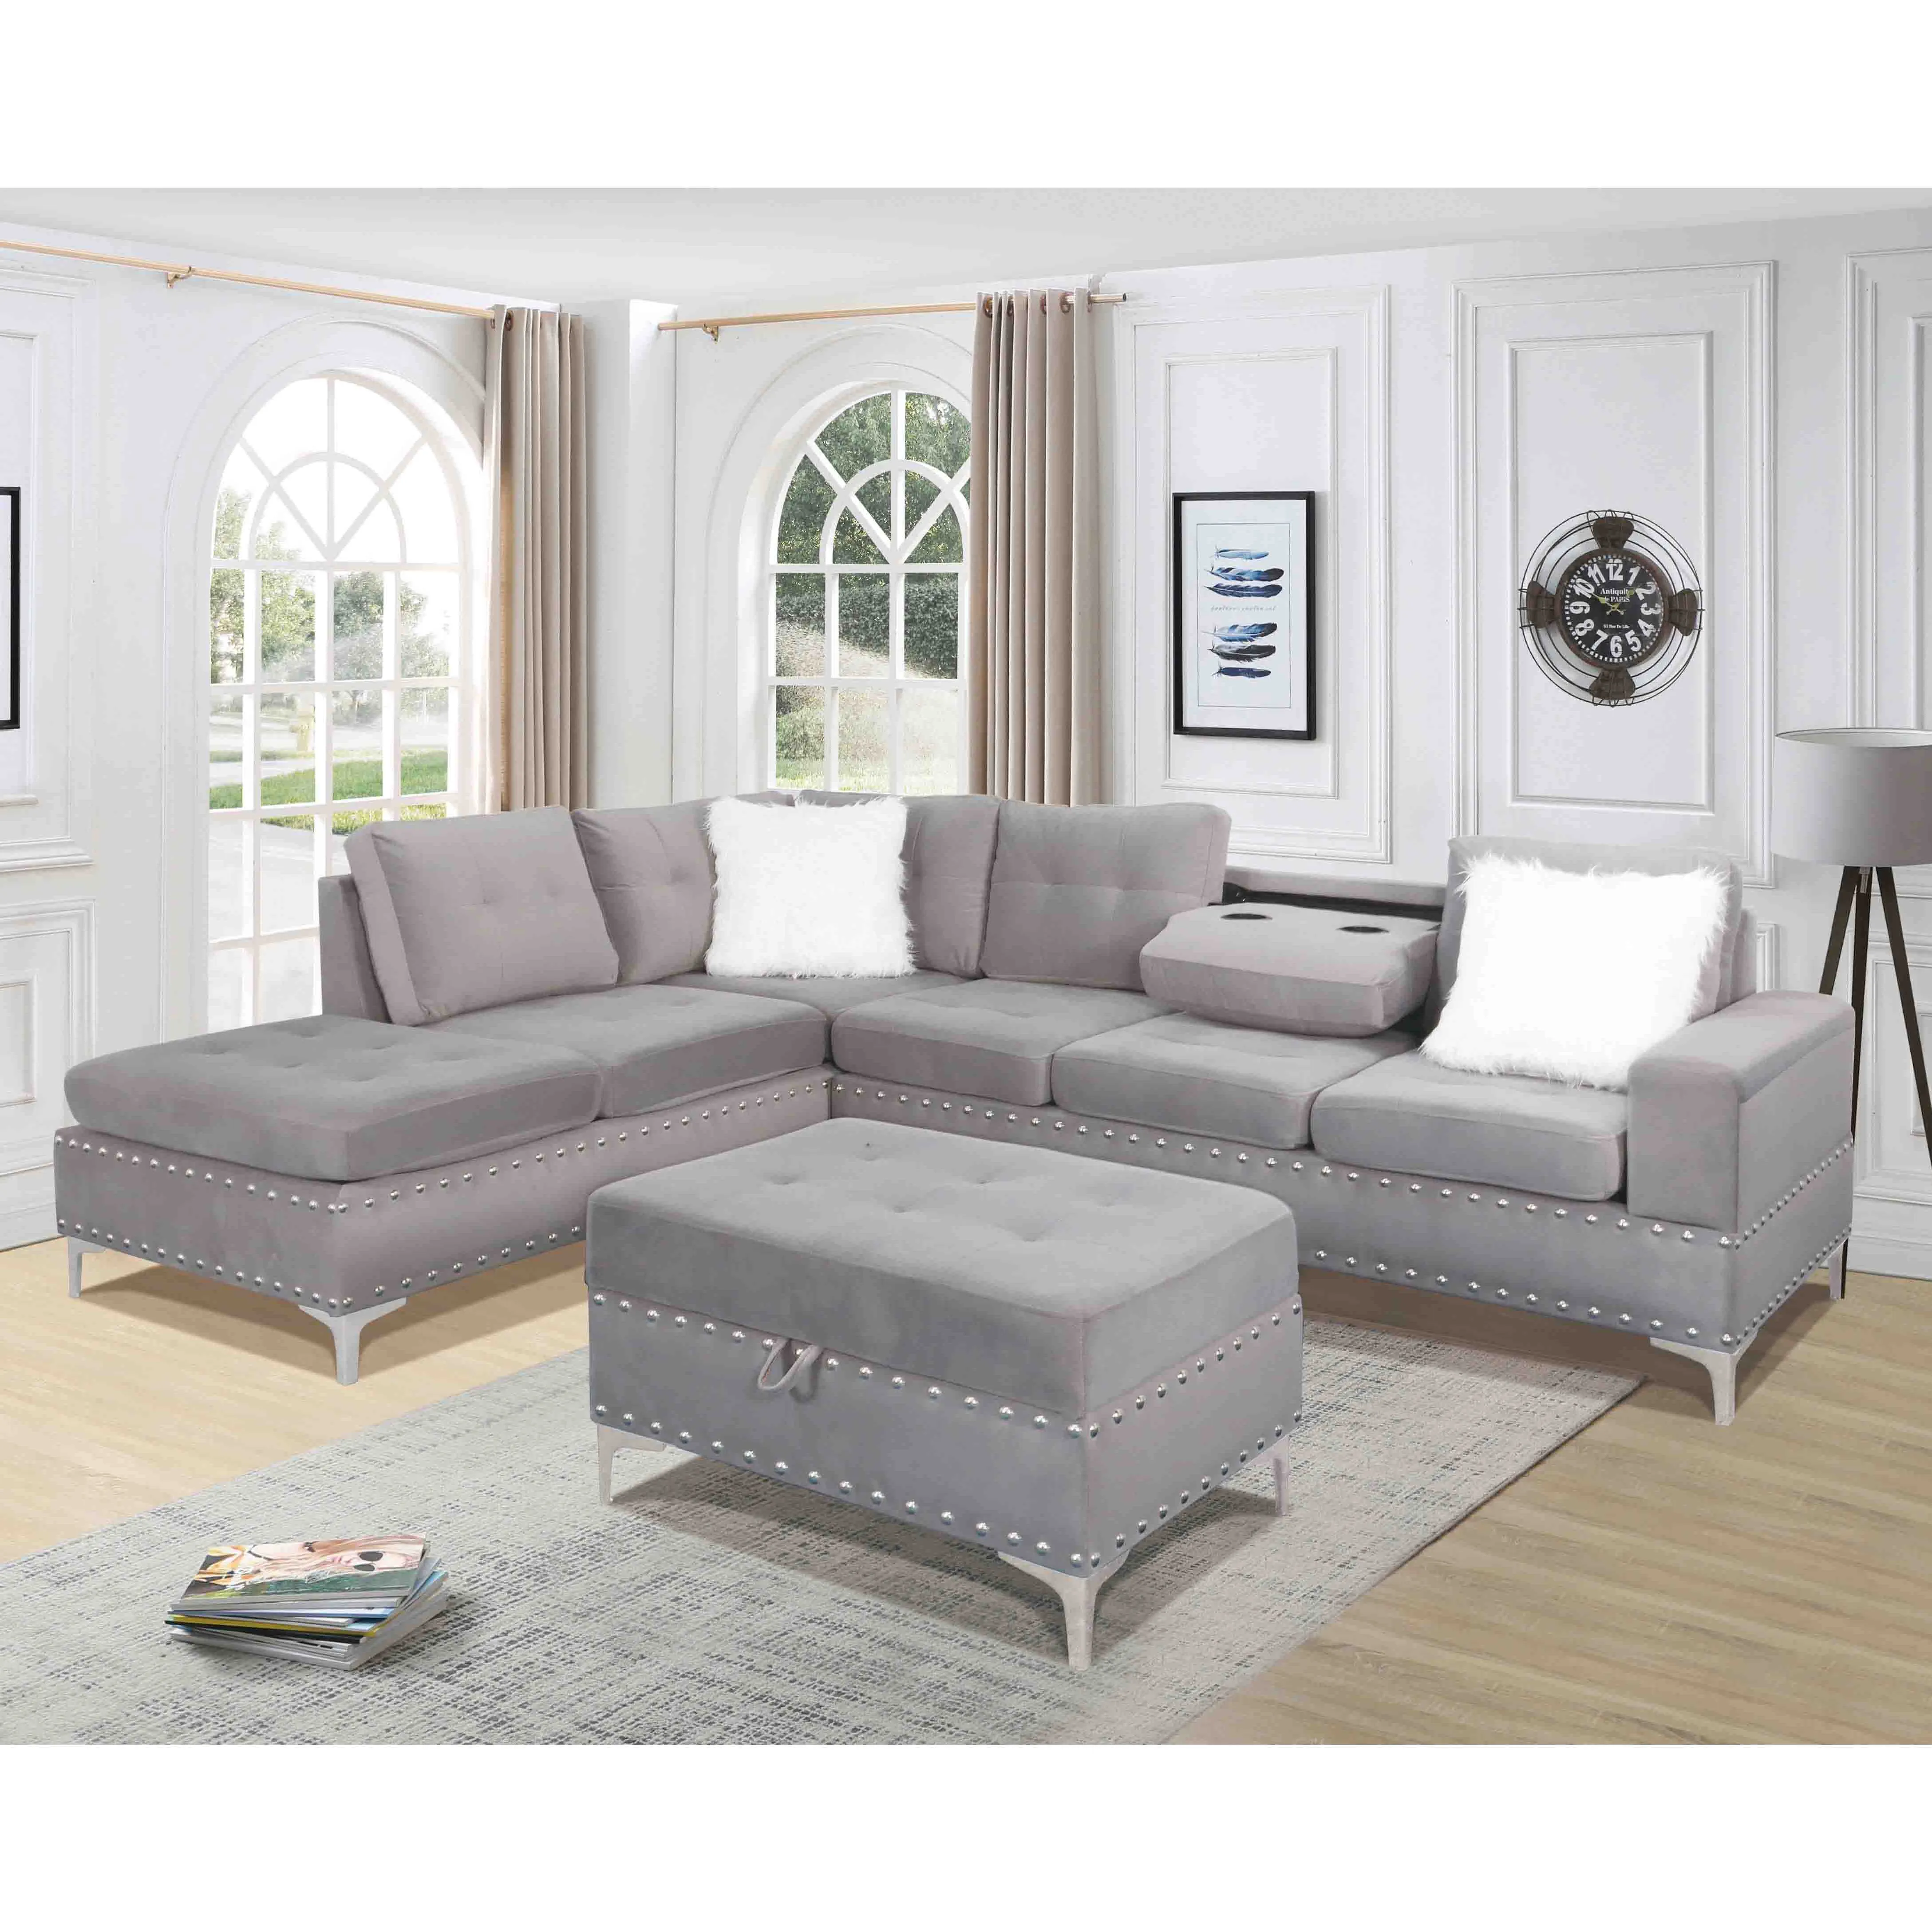 Divano componibile moderno di lusso leggero mobili da soggiorno divano Chesterfield 3 pezzi in ecopelle grigia nera per la casa o l'hotel